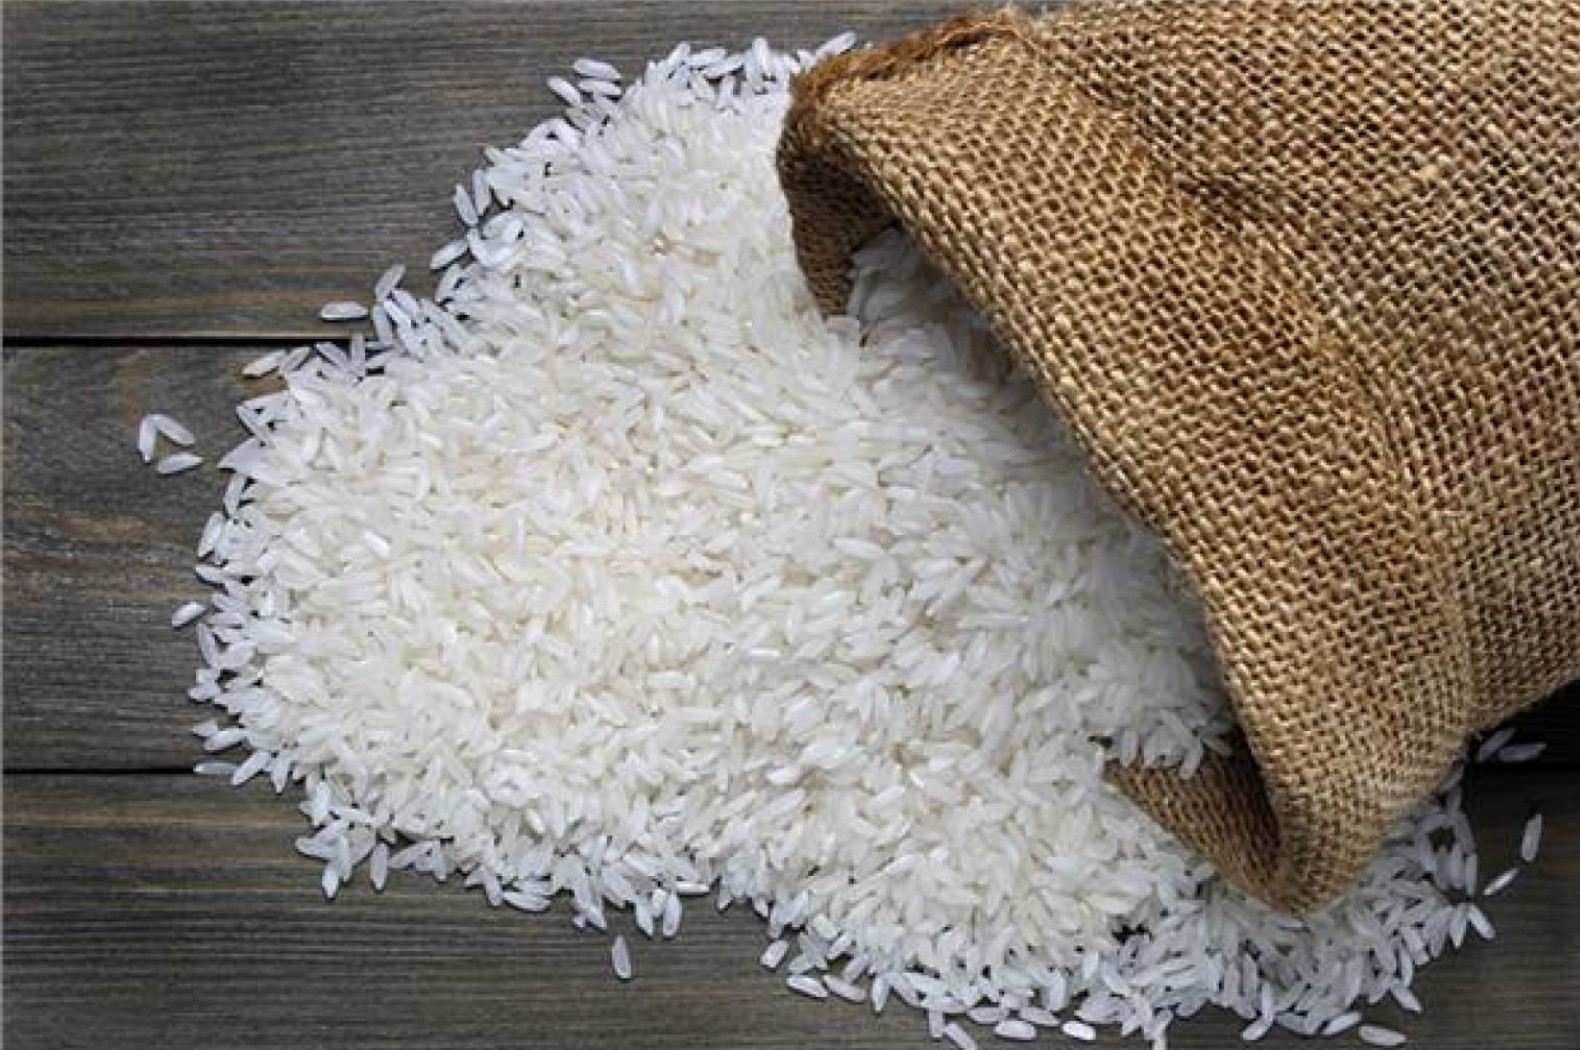 أزمة الأرز- وكالات